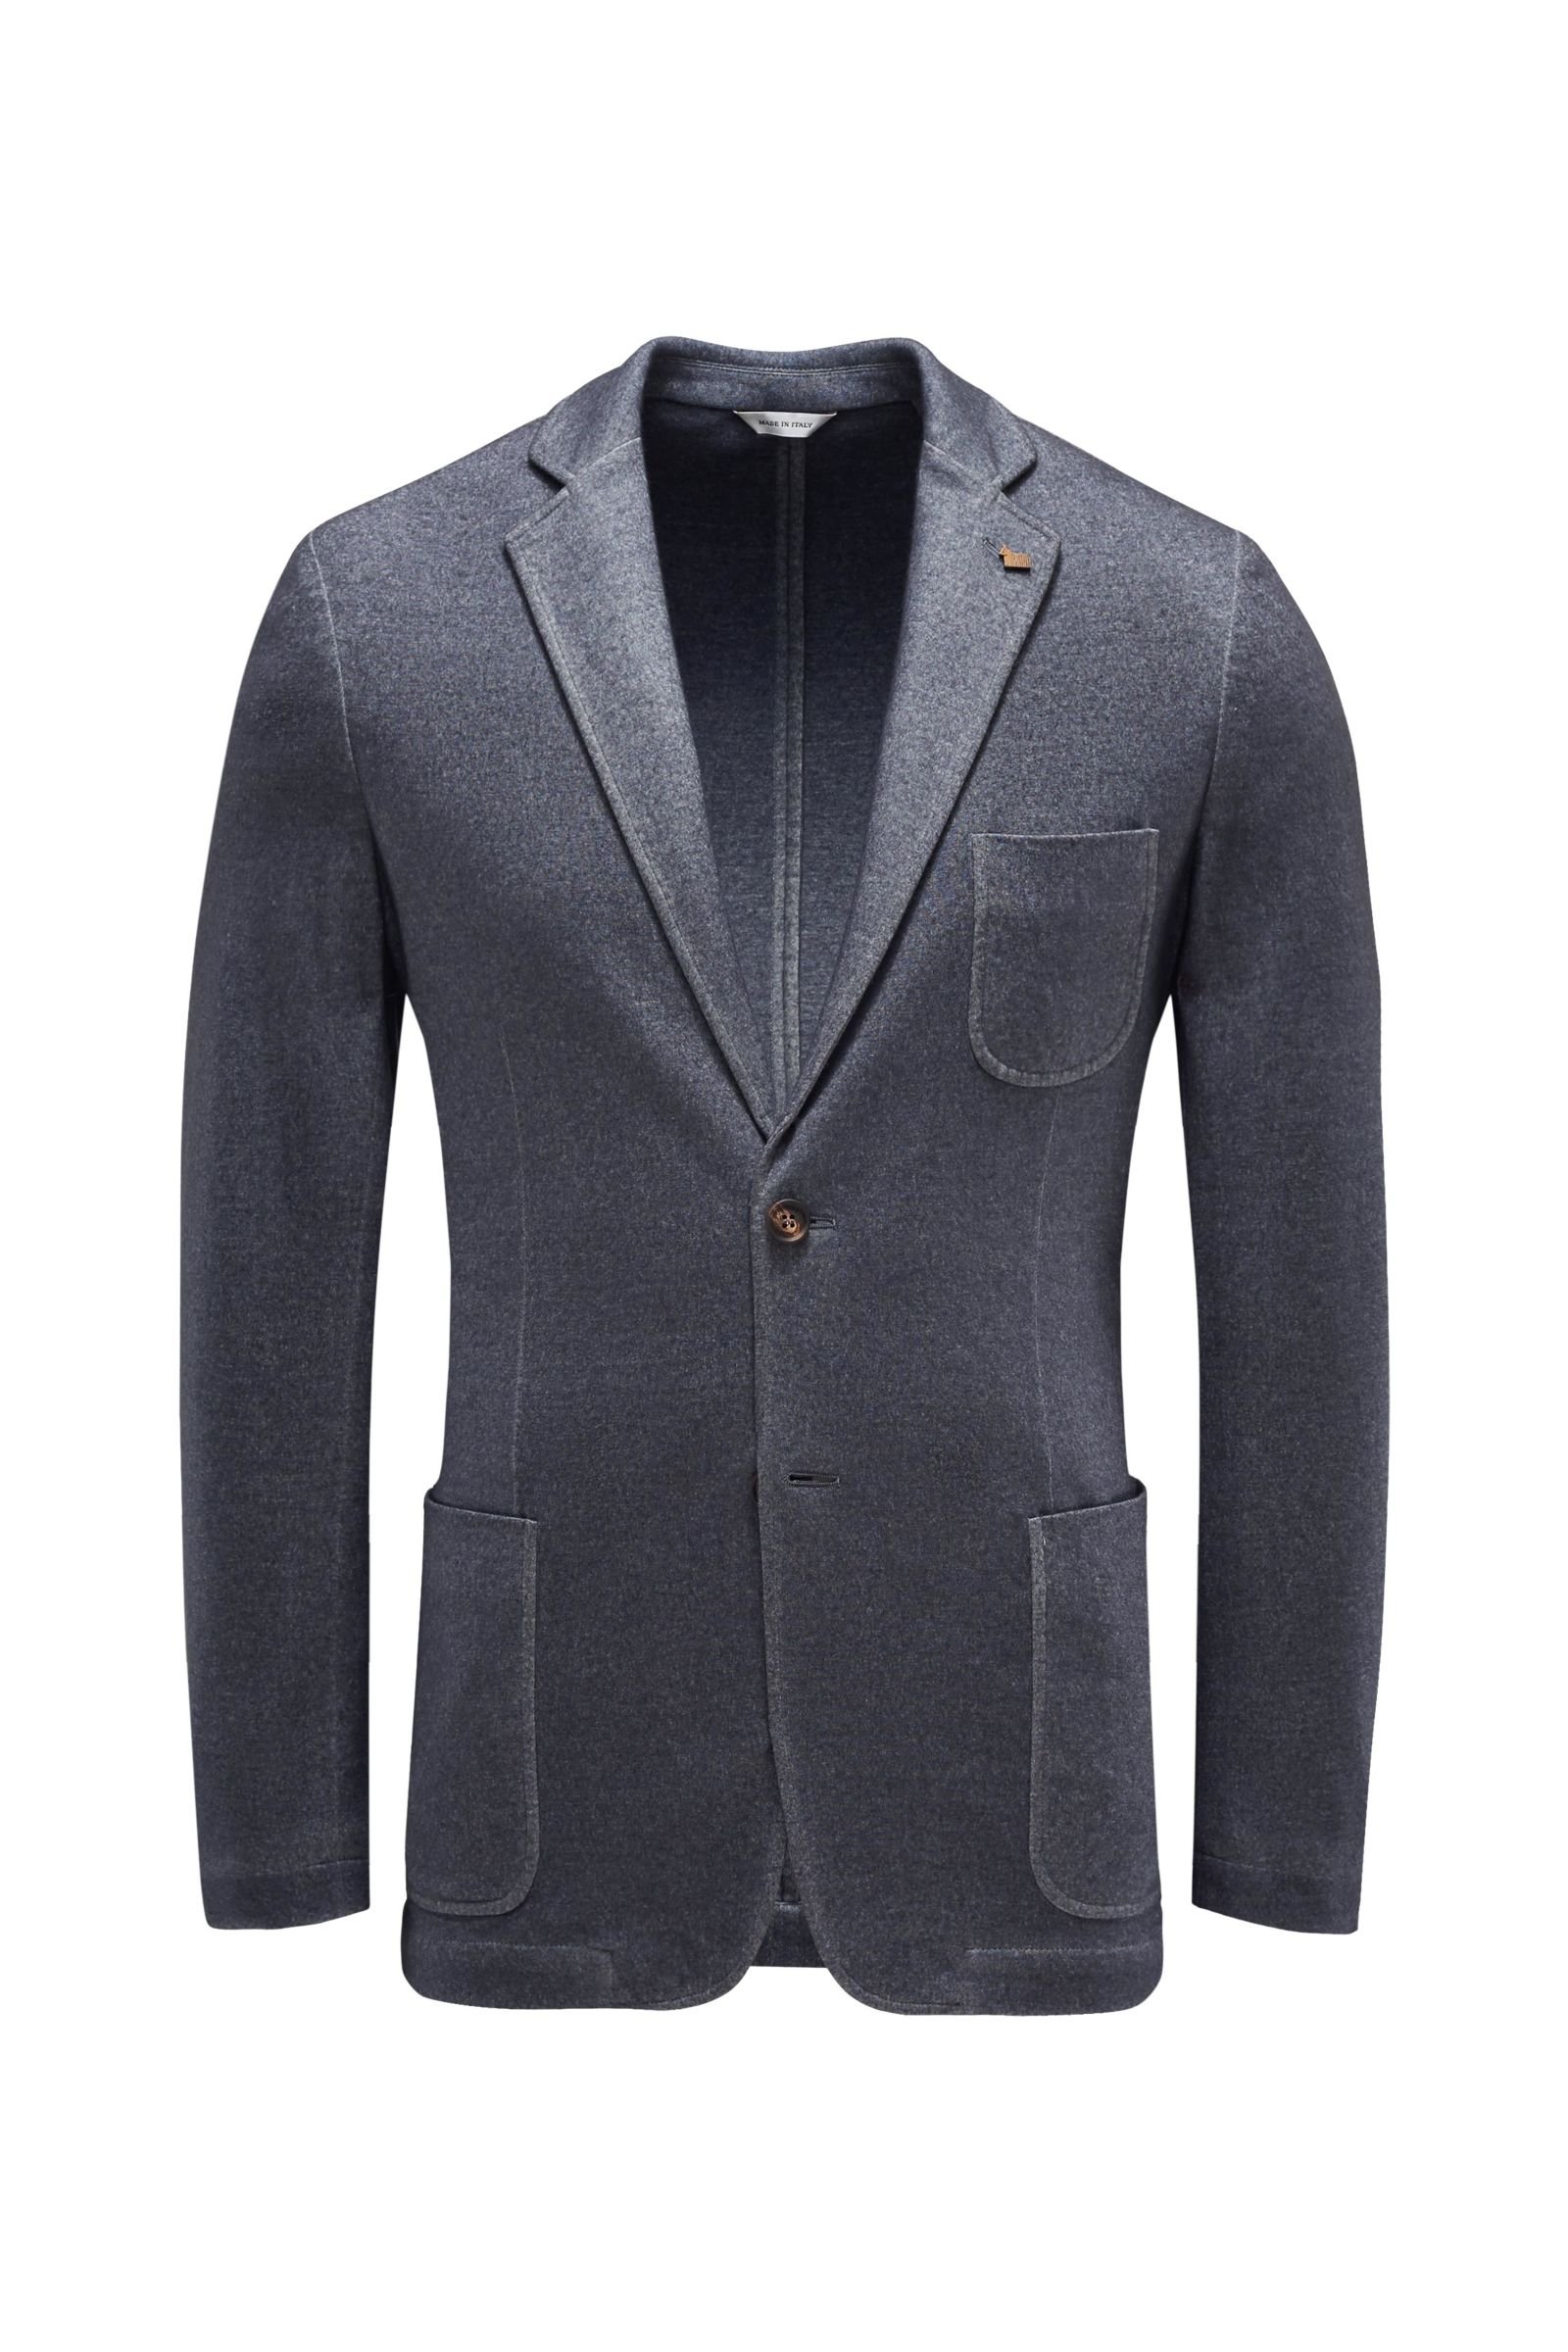 Smart-casual jacket dark grey